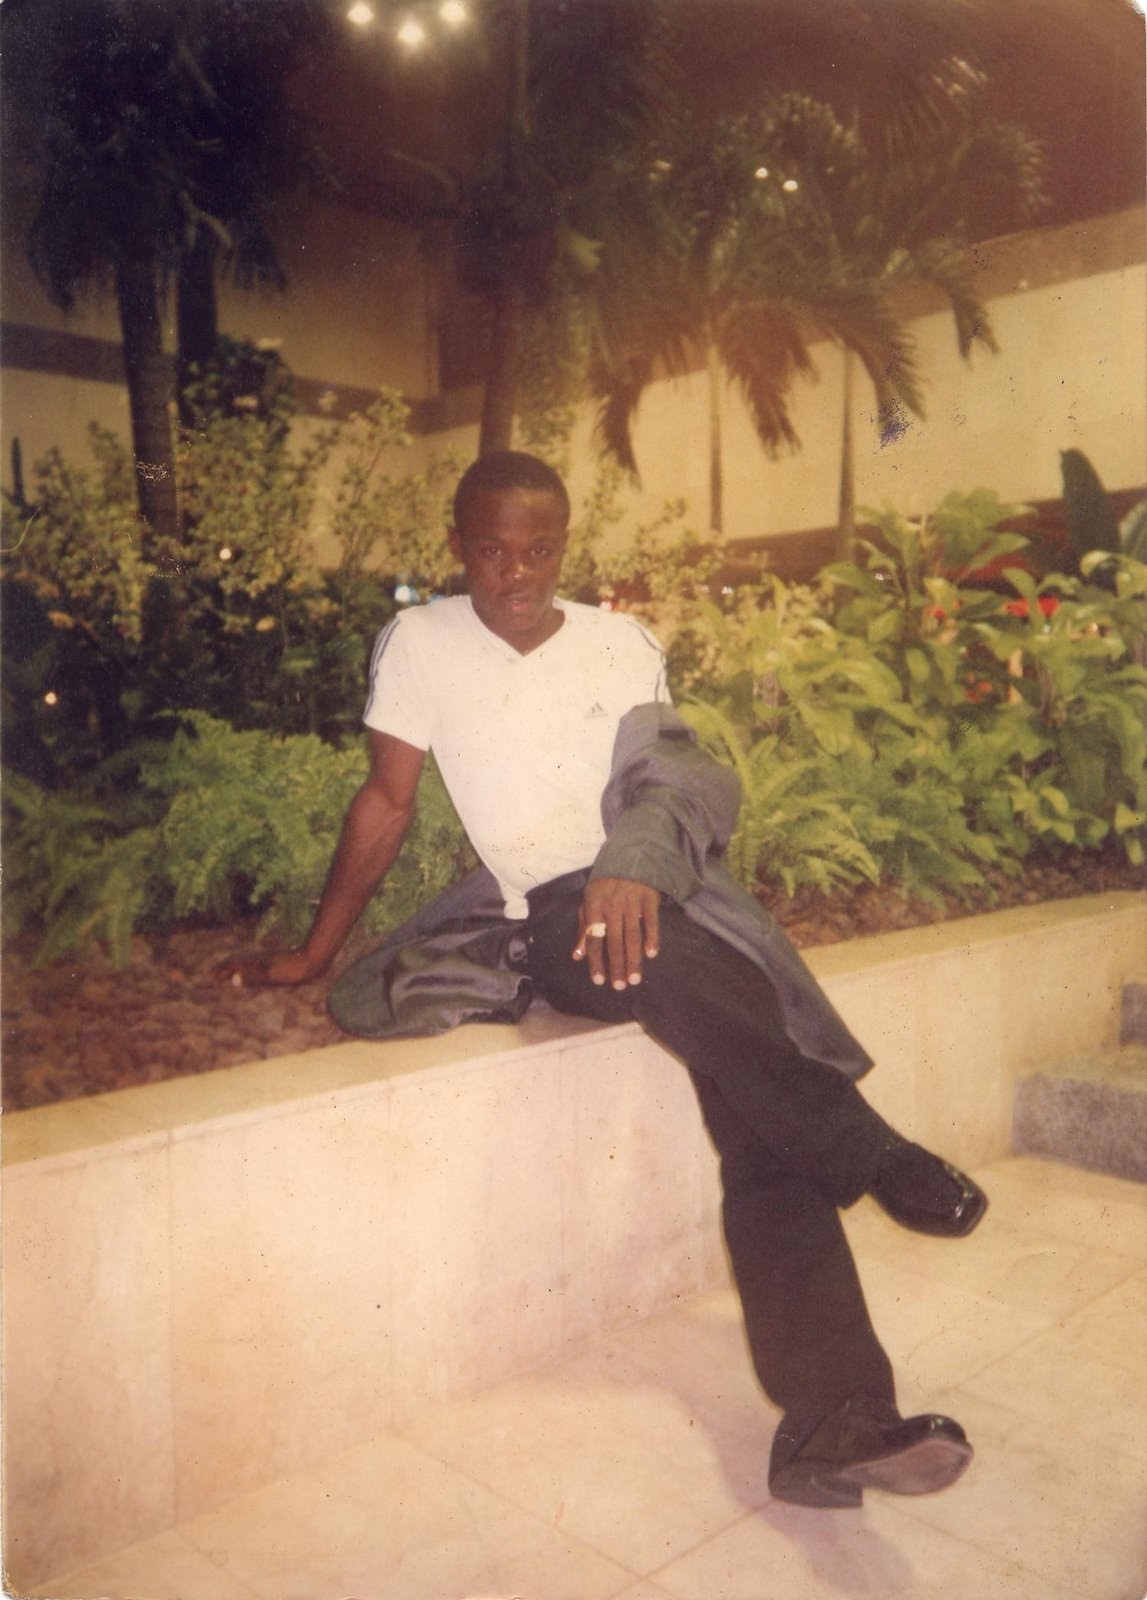 iwuchukwu amara tochi as a young boy